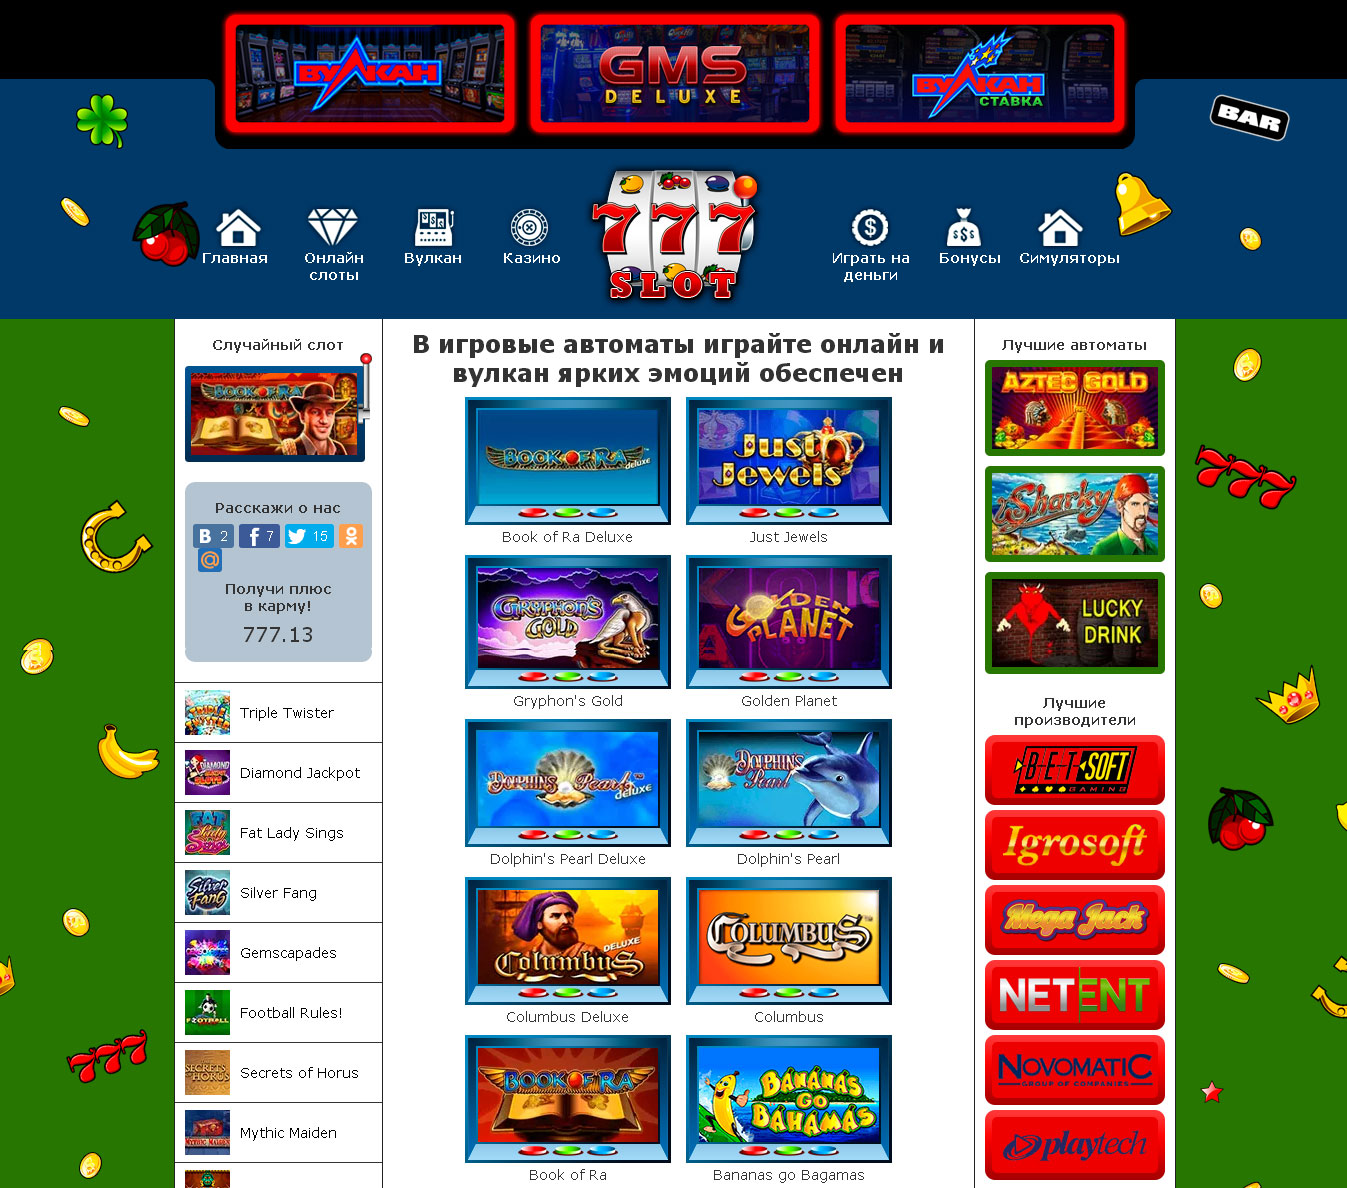 Вавада казино онлайн ✔️ Официальный сайт VAVADA играть в casino online